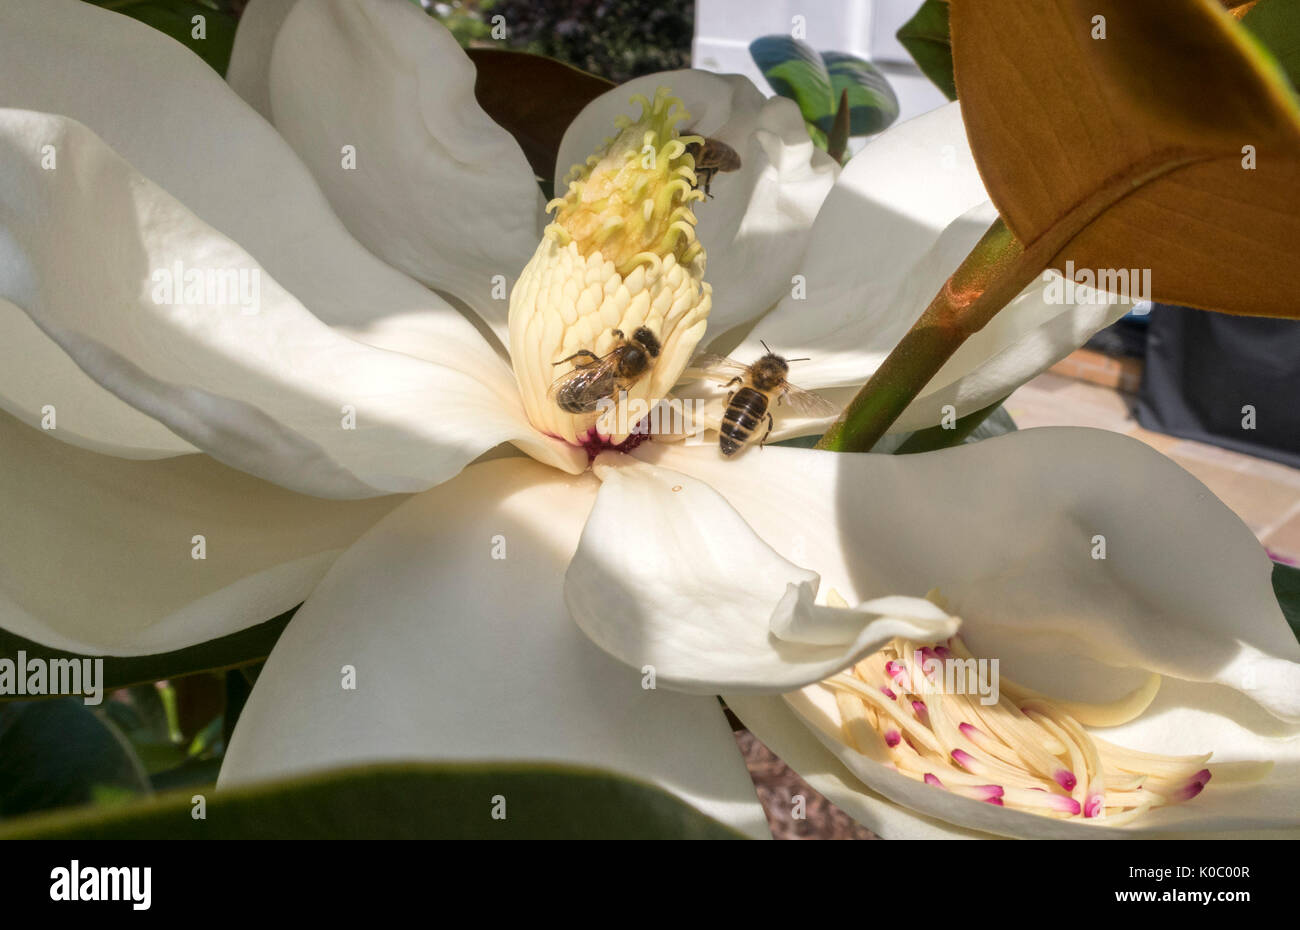 Wespen auf den Blumen der Magnolia grandiflora Spectabilis, die südliche Magnolia. Die stark duftenden Blumen haben einen starken Zitronenduft Stockfoto